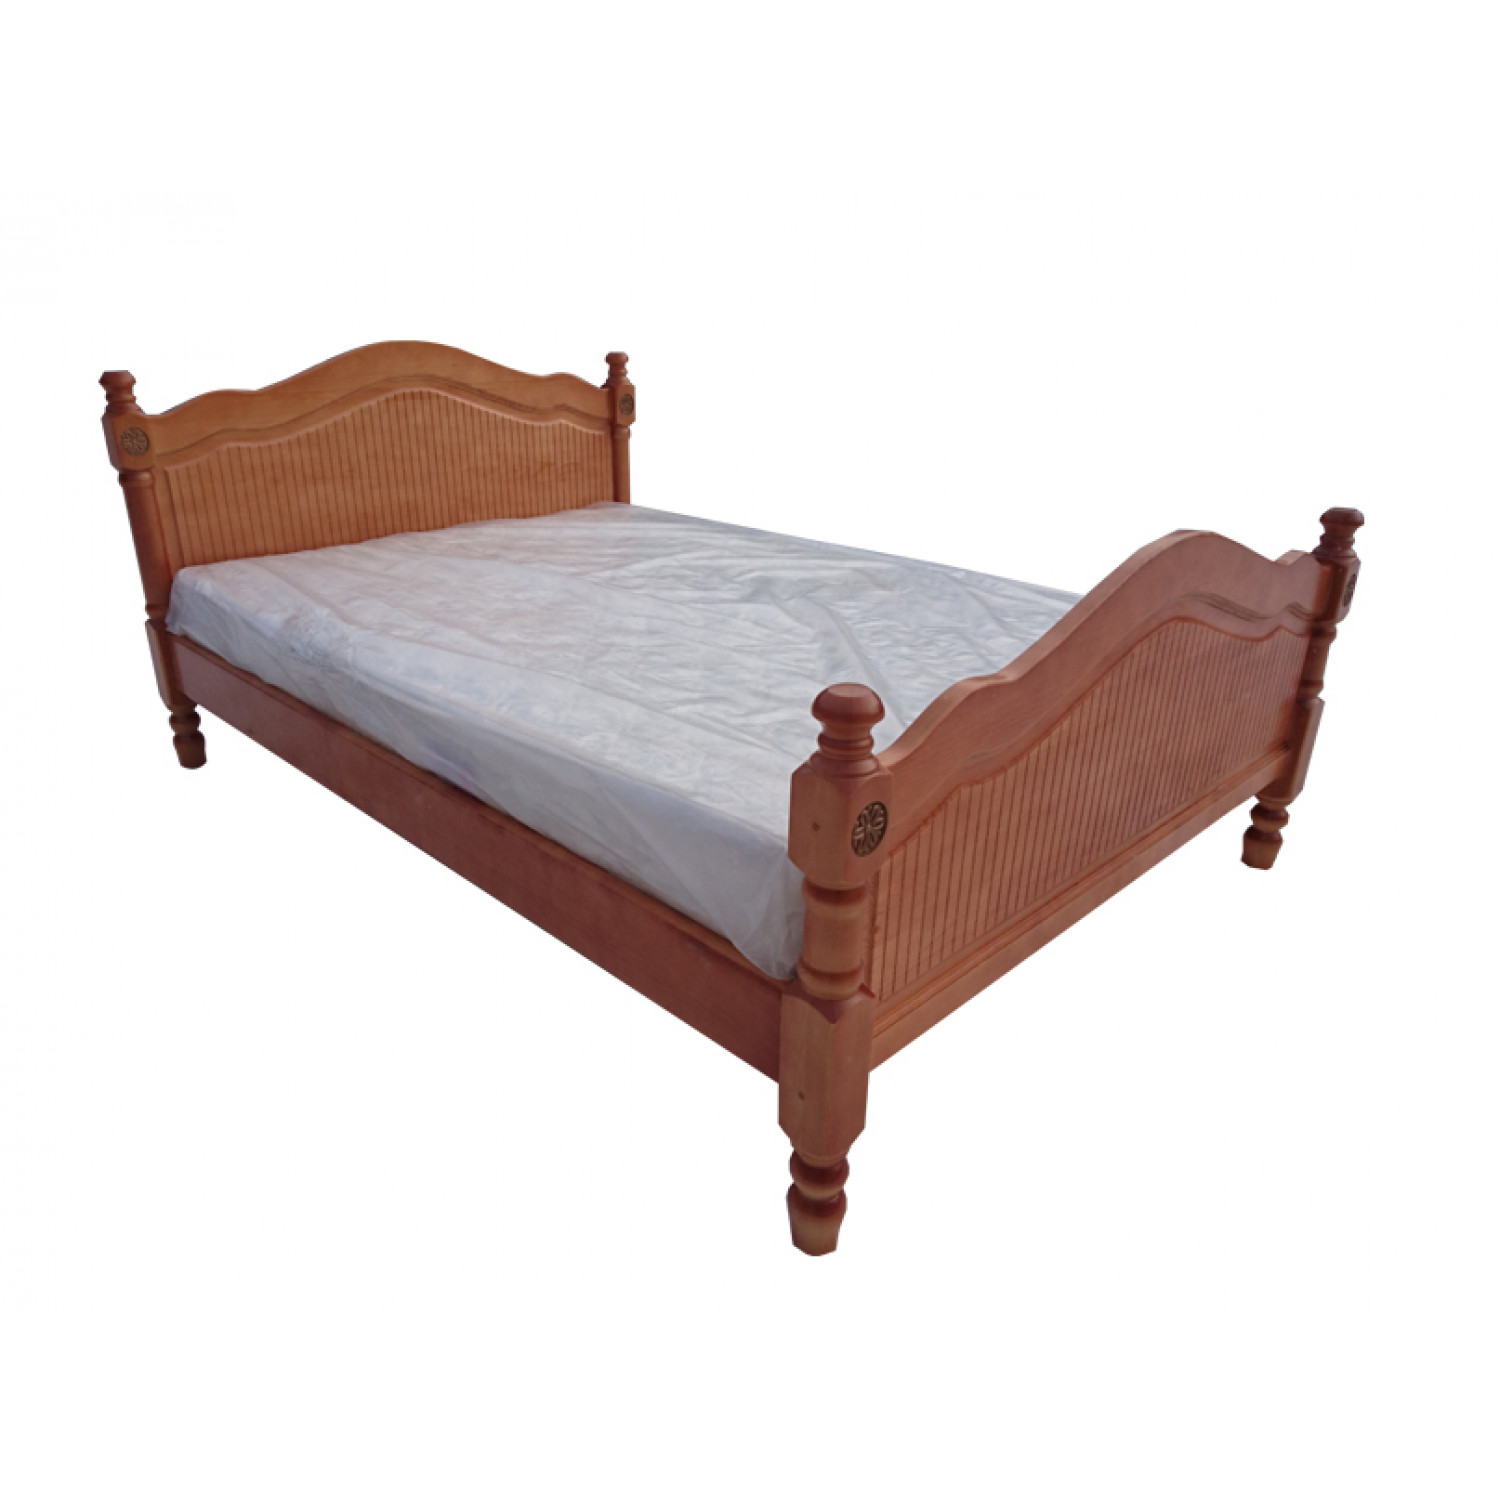 деревянные кровати из массива дерева от производителя из мурома